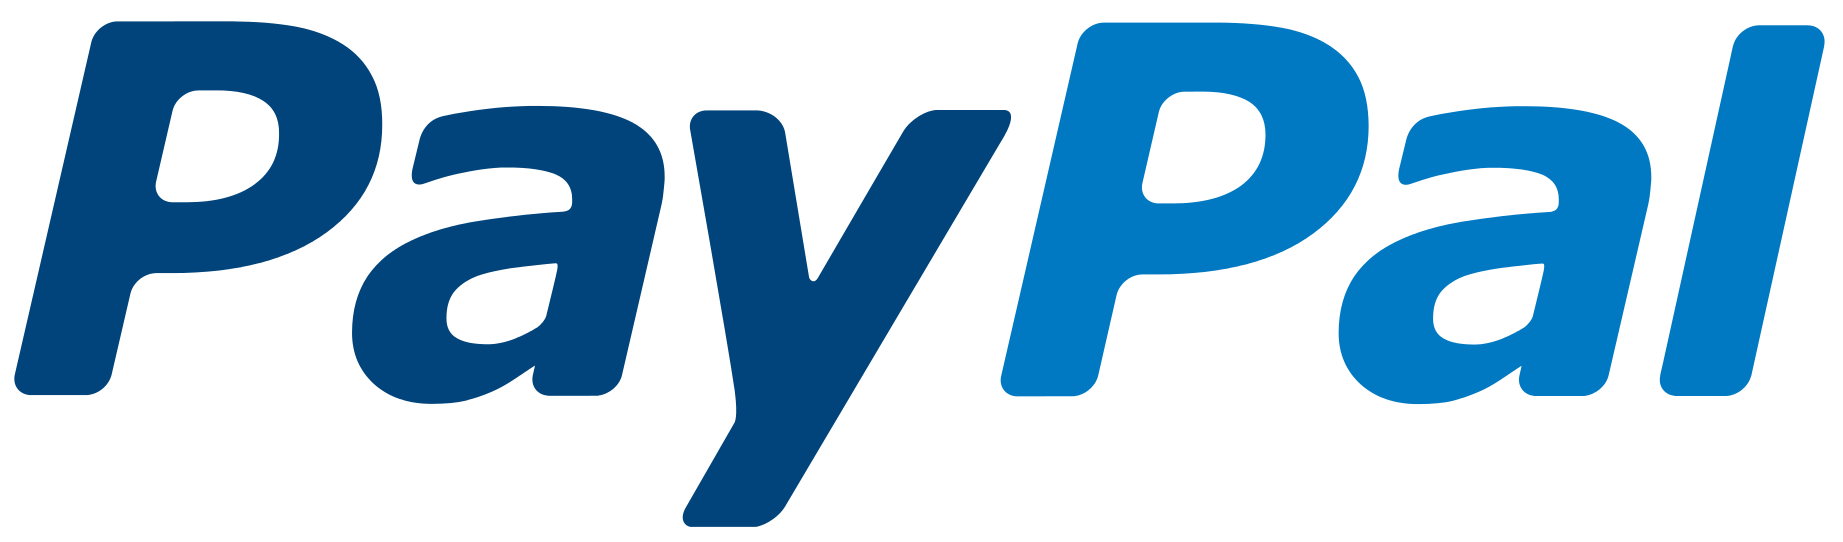 Basic paypal logo png #2128 - Free Transparent PNG Logos